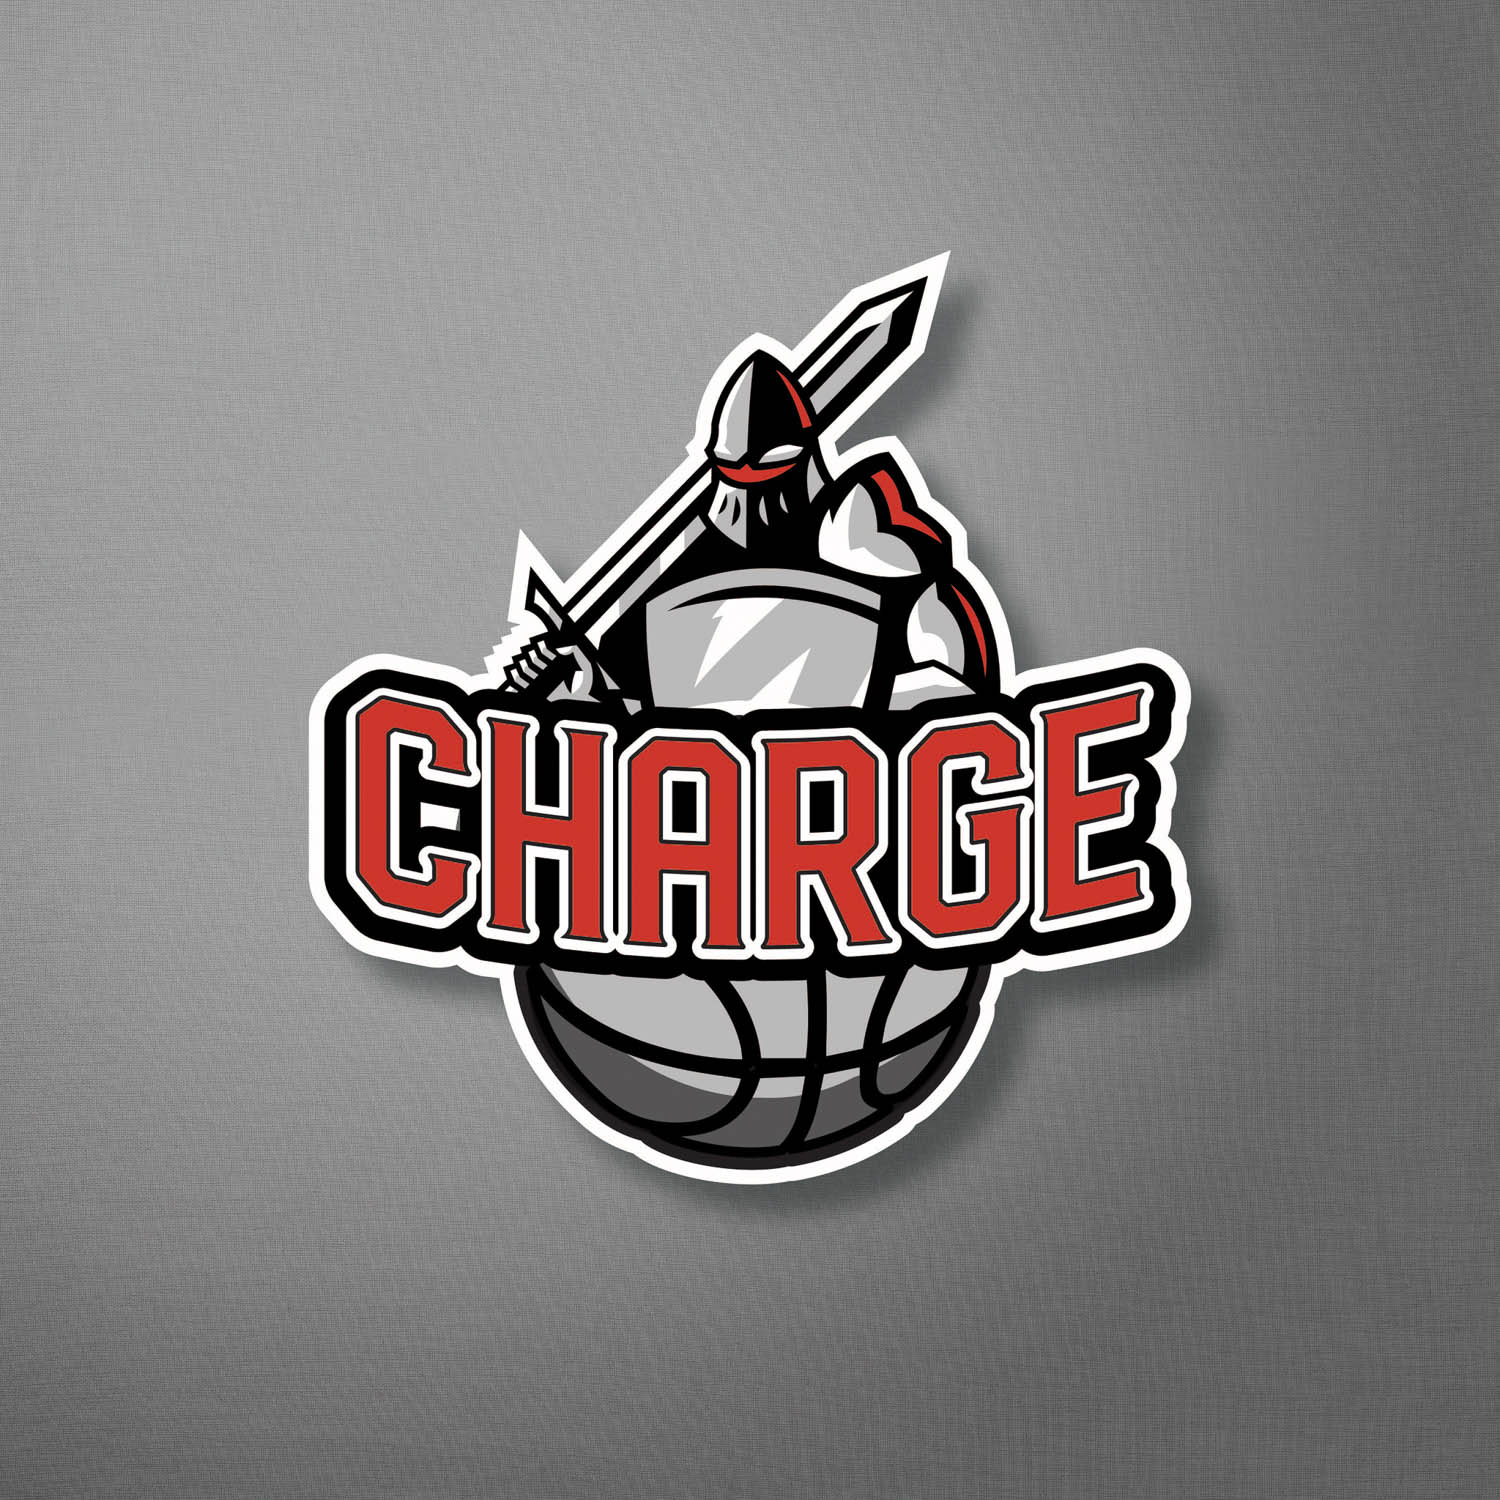 18 - charge logo 1.jpg